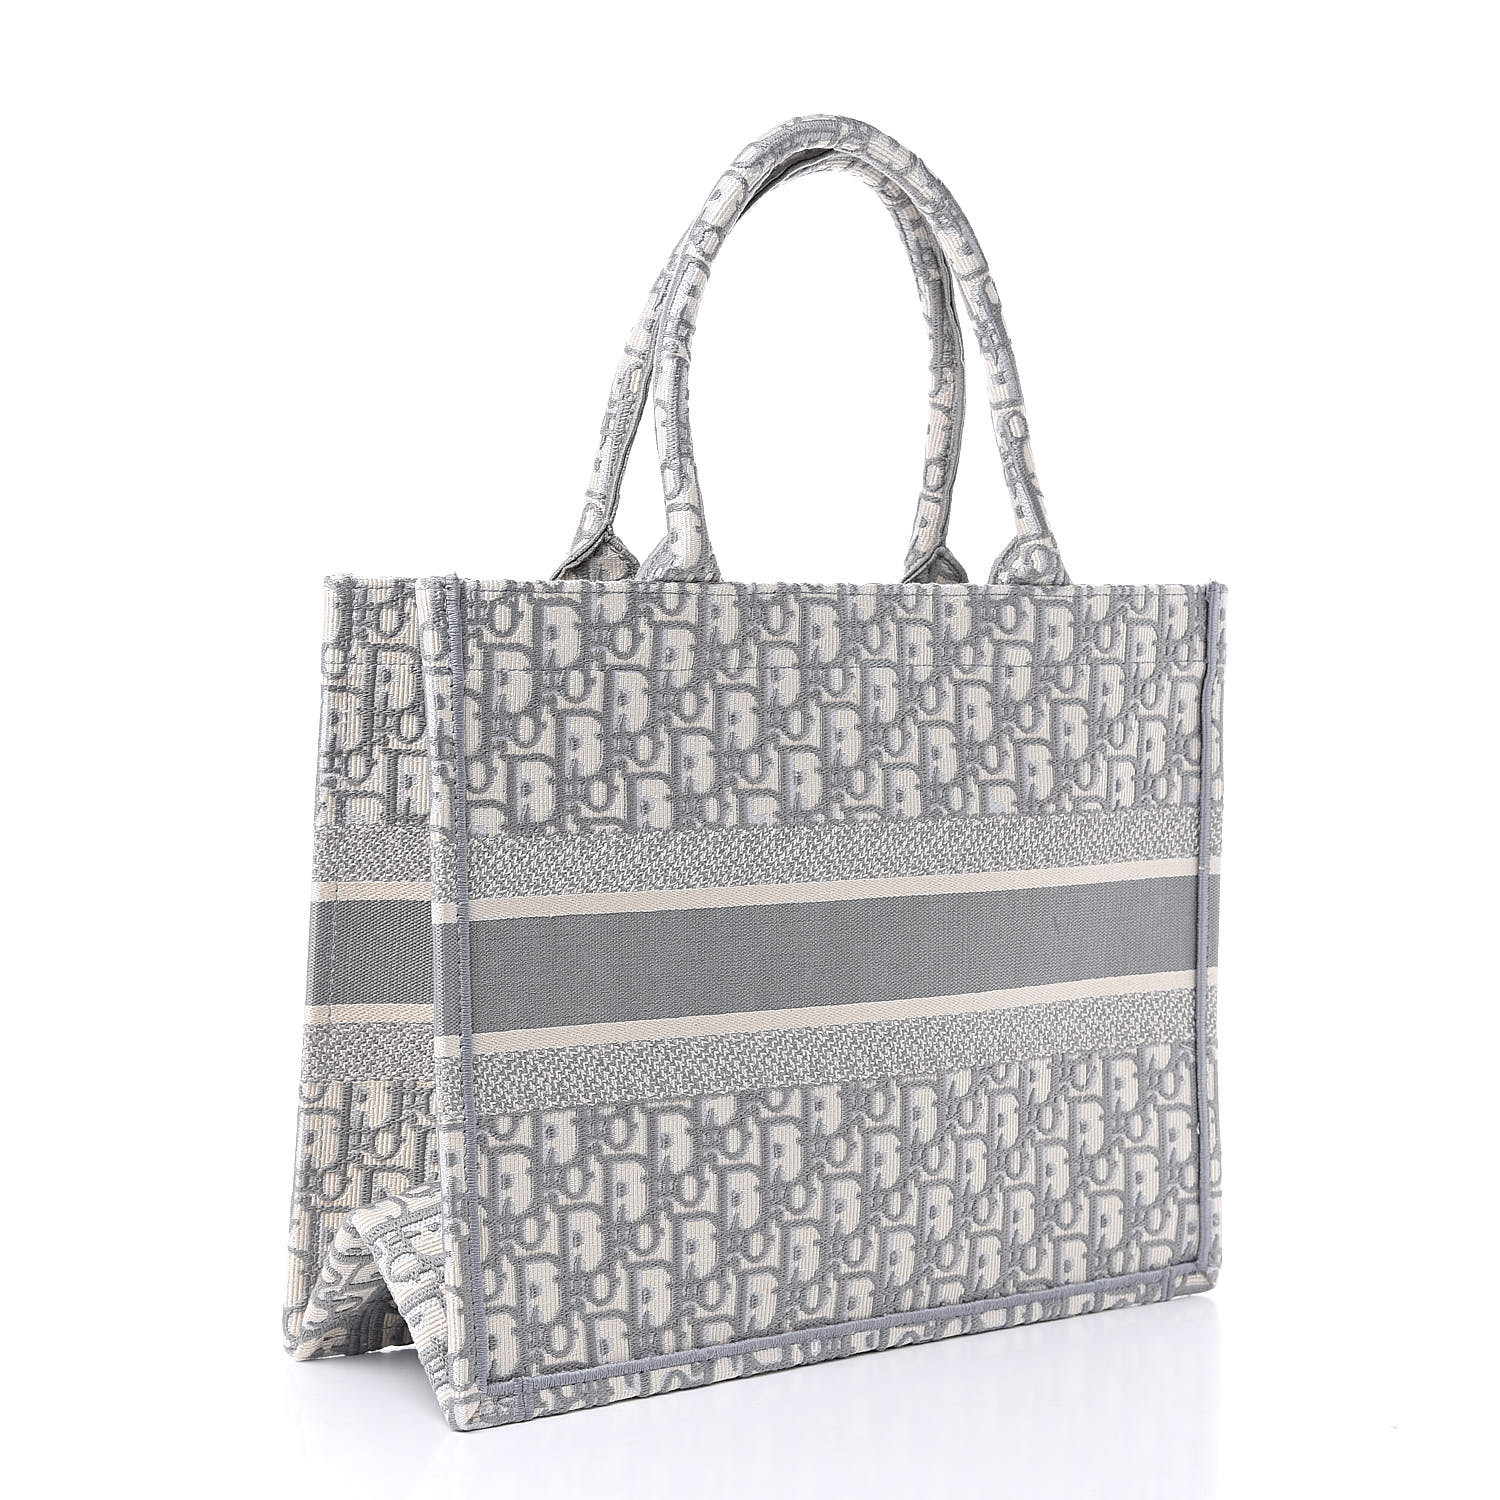 Christian Dior Handbag Tote | semashow.com